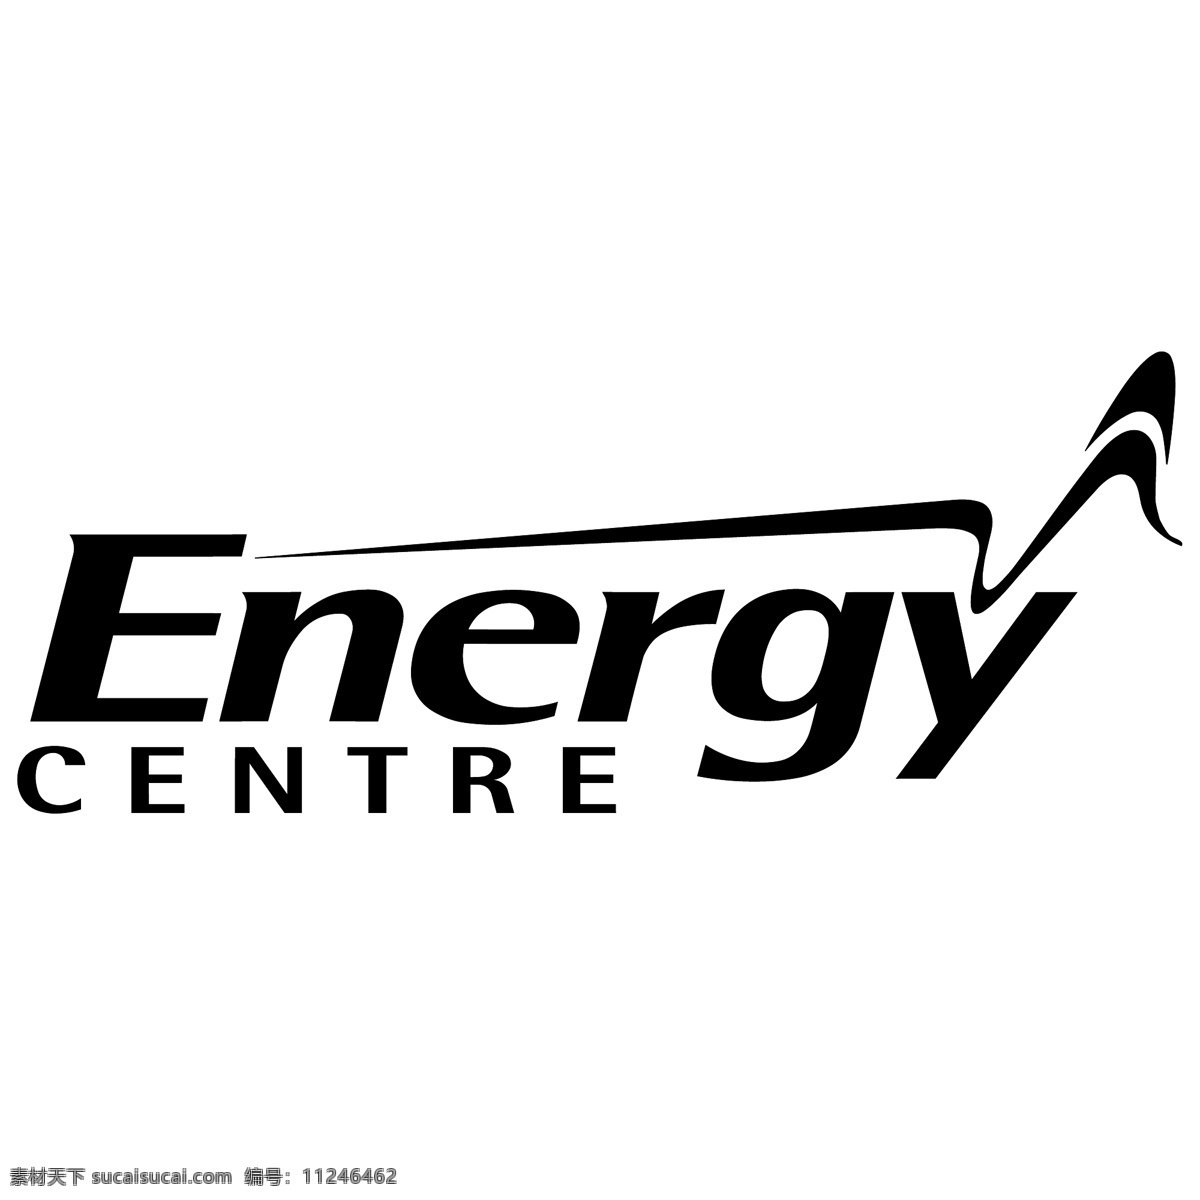 能源中心 矢量标志下载 免费矢量标识 商标 品牌标识 标识 矢量 免费 品牌 公司 白色